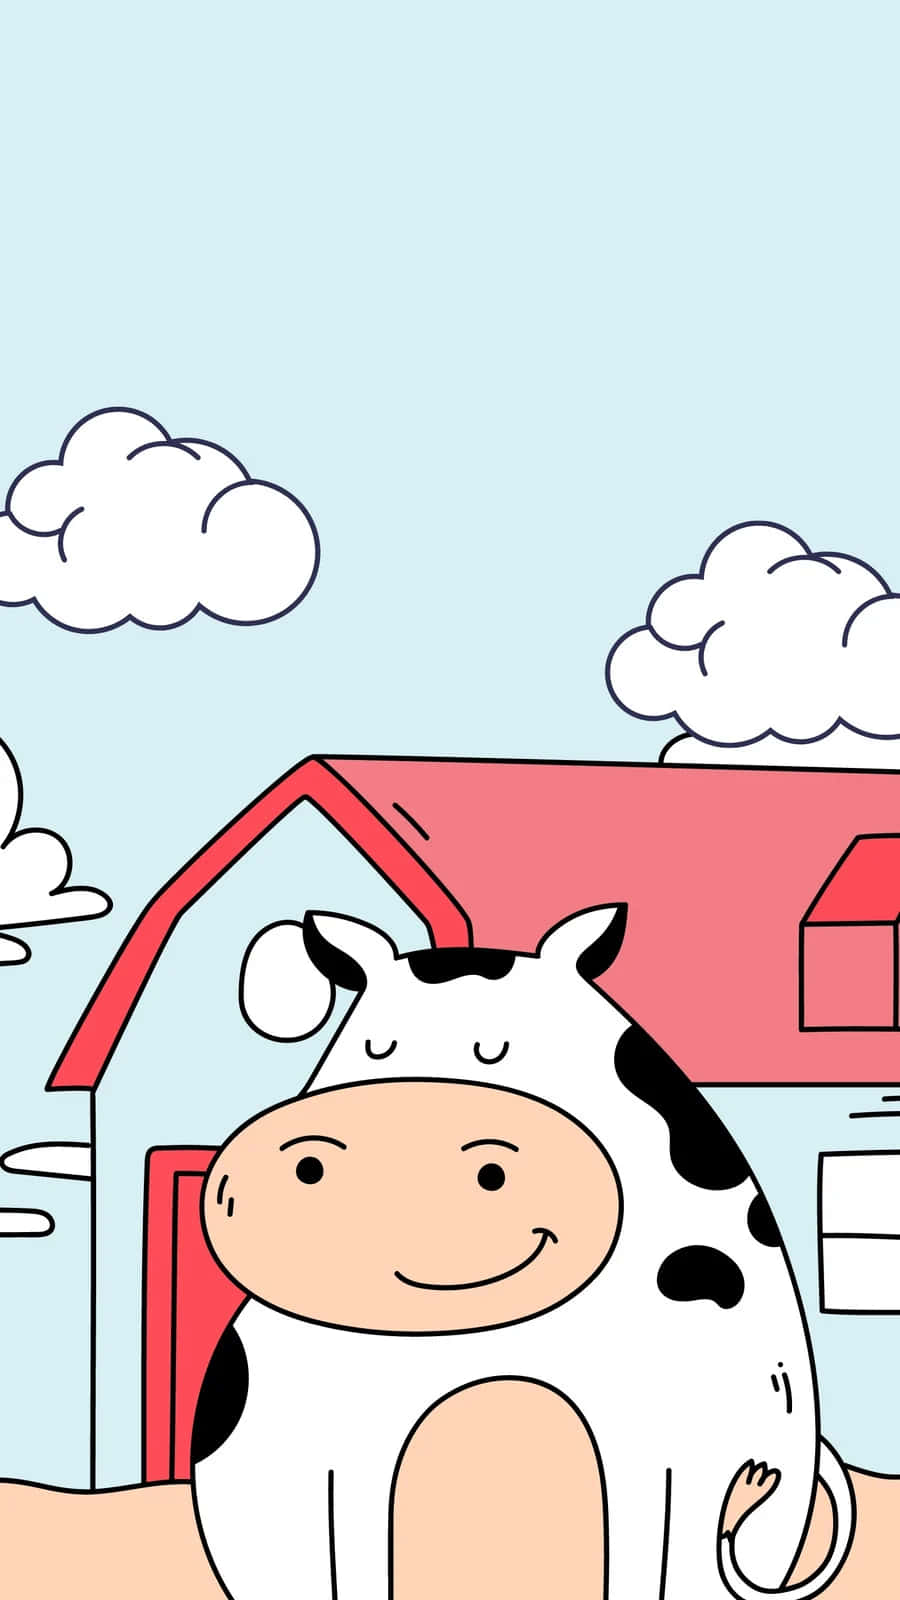 En tegnede ko, der står foran et hus.